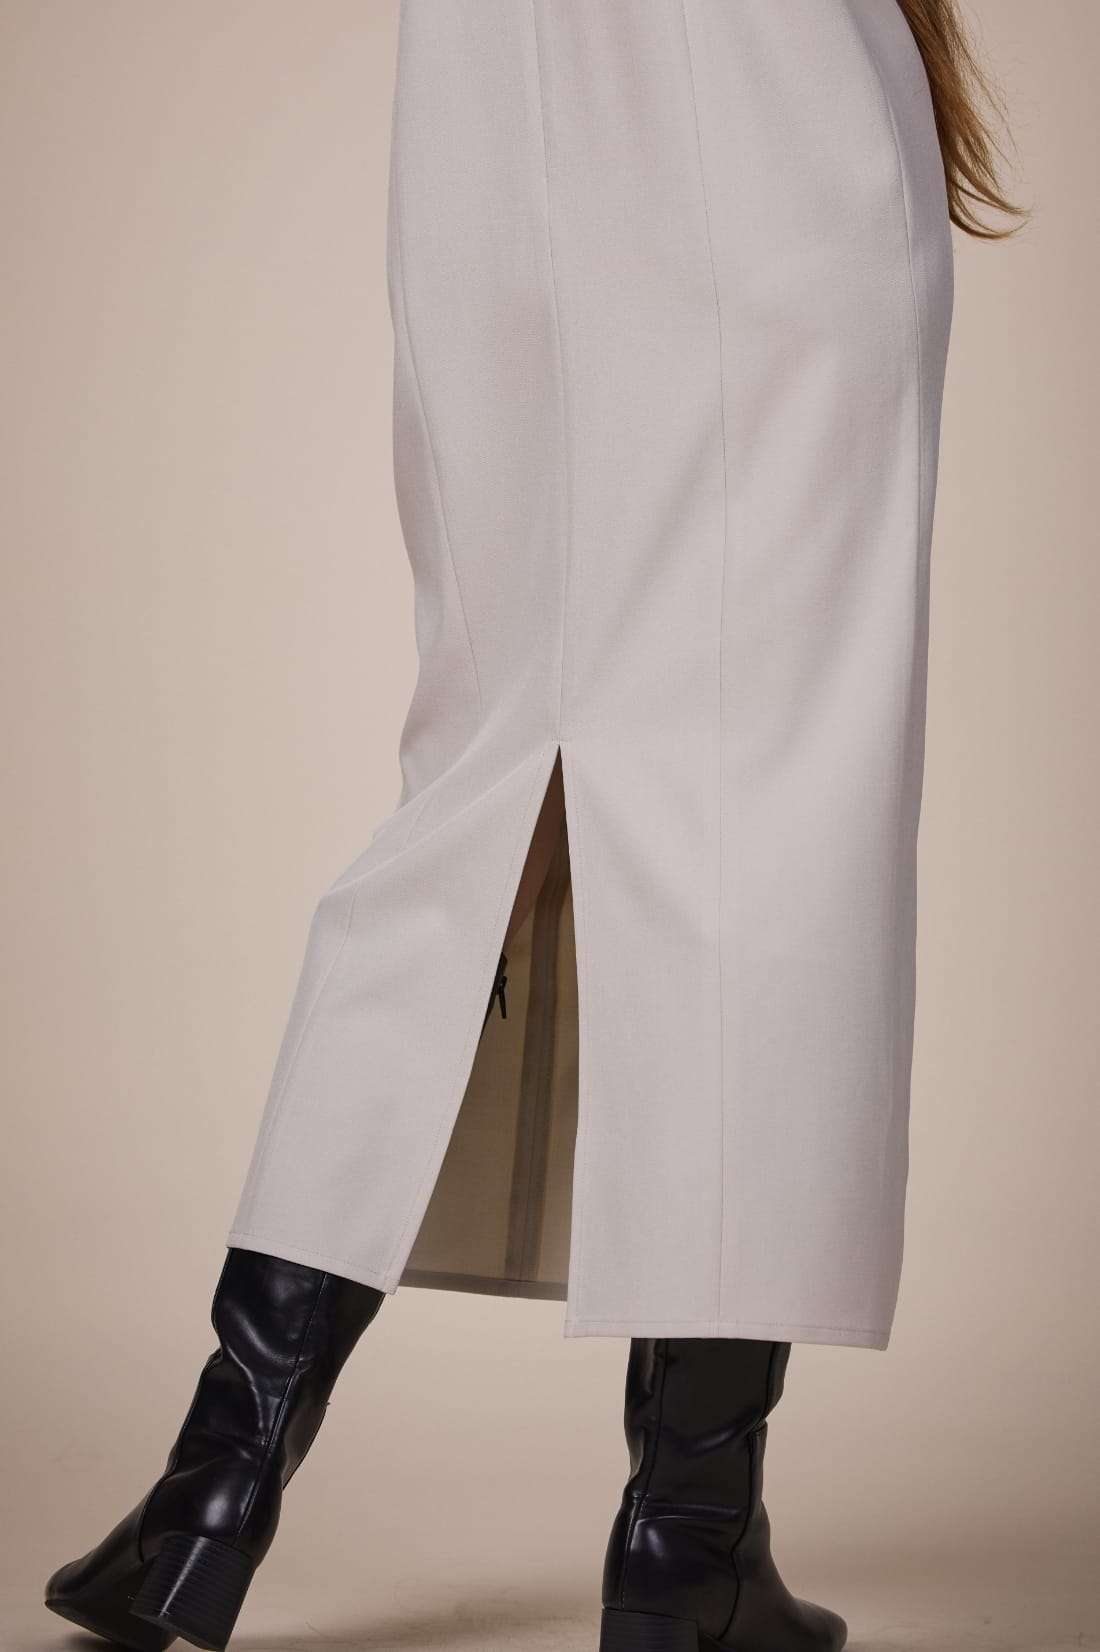 ウエストギャザーセミタイトワンピースを着用している女性モデルの、足元写真 sp